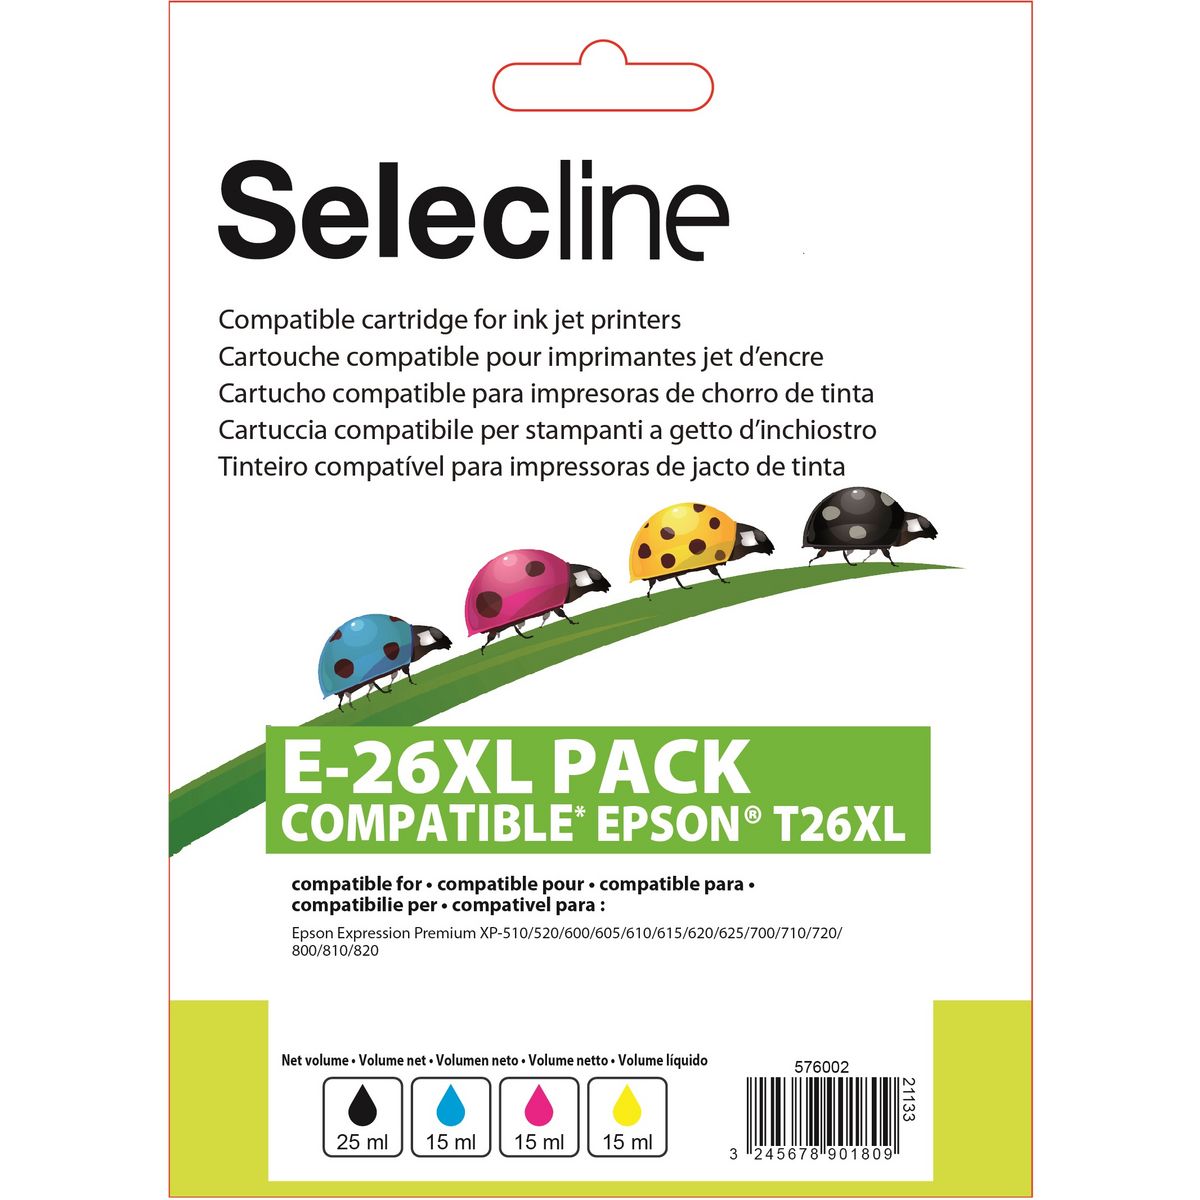 SELECLINE Cartouche 4 Couleurs E-26 XL PACK